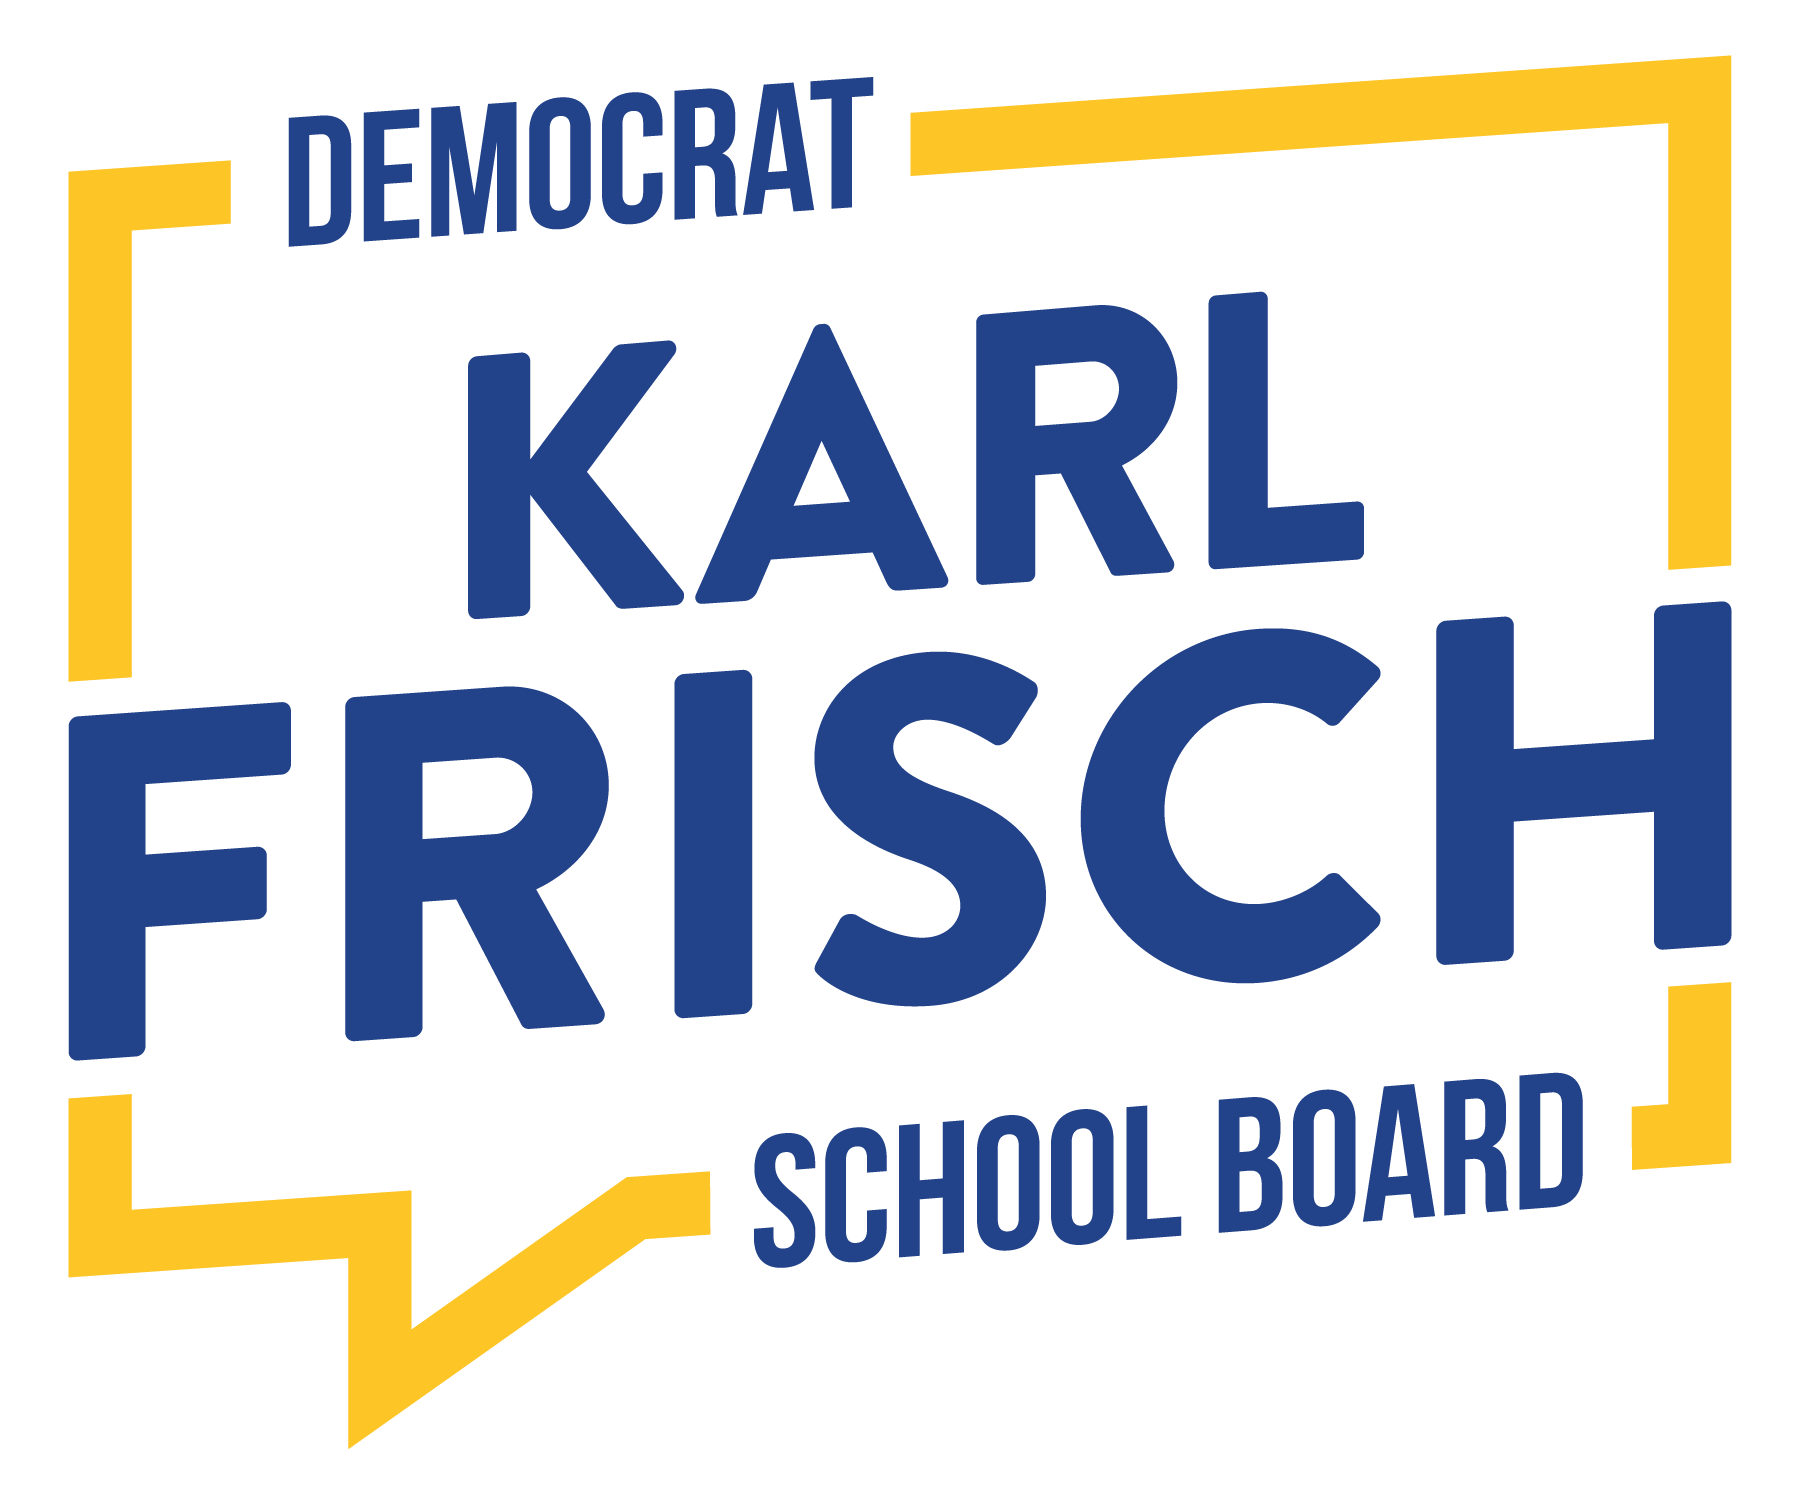 Karl Frisch